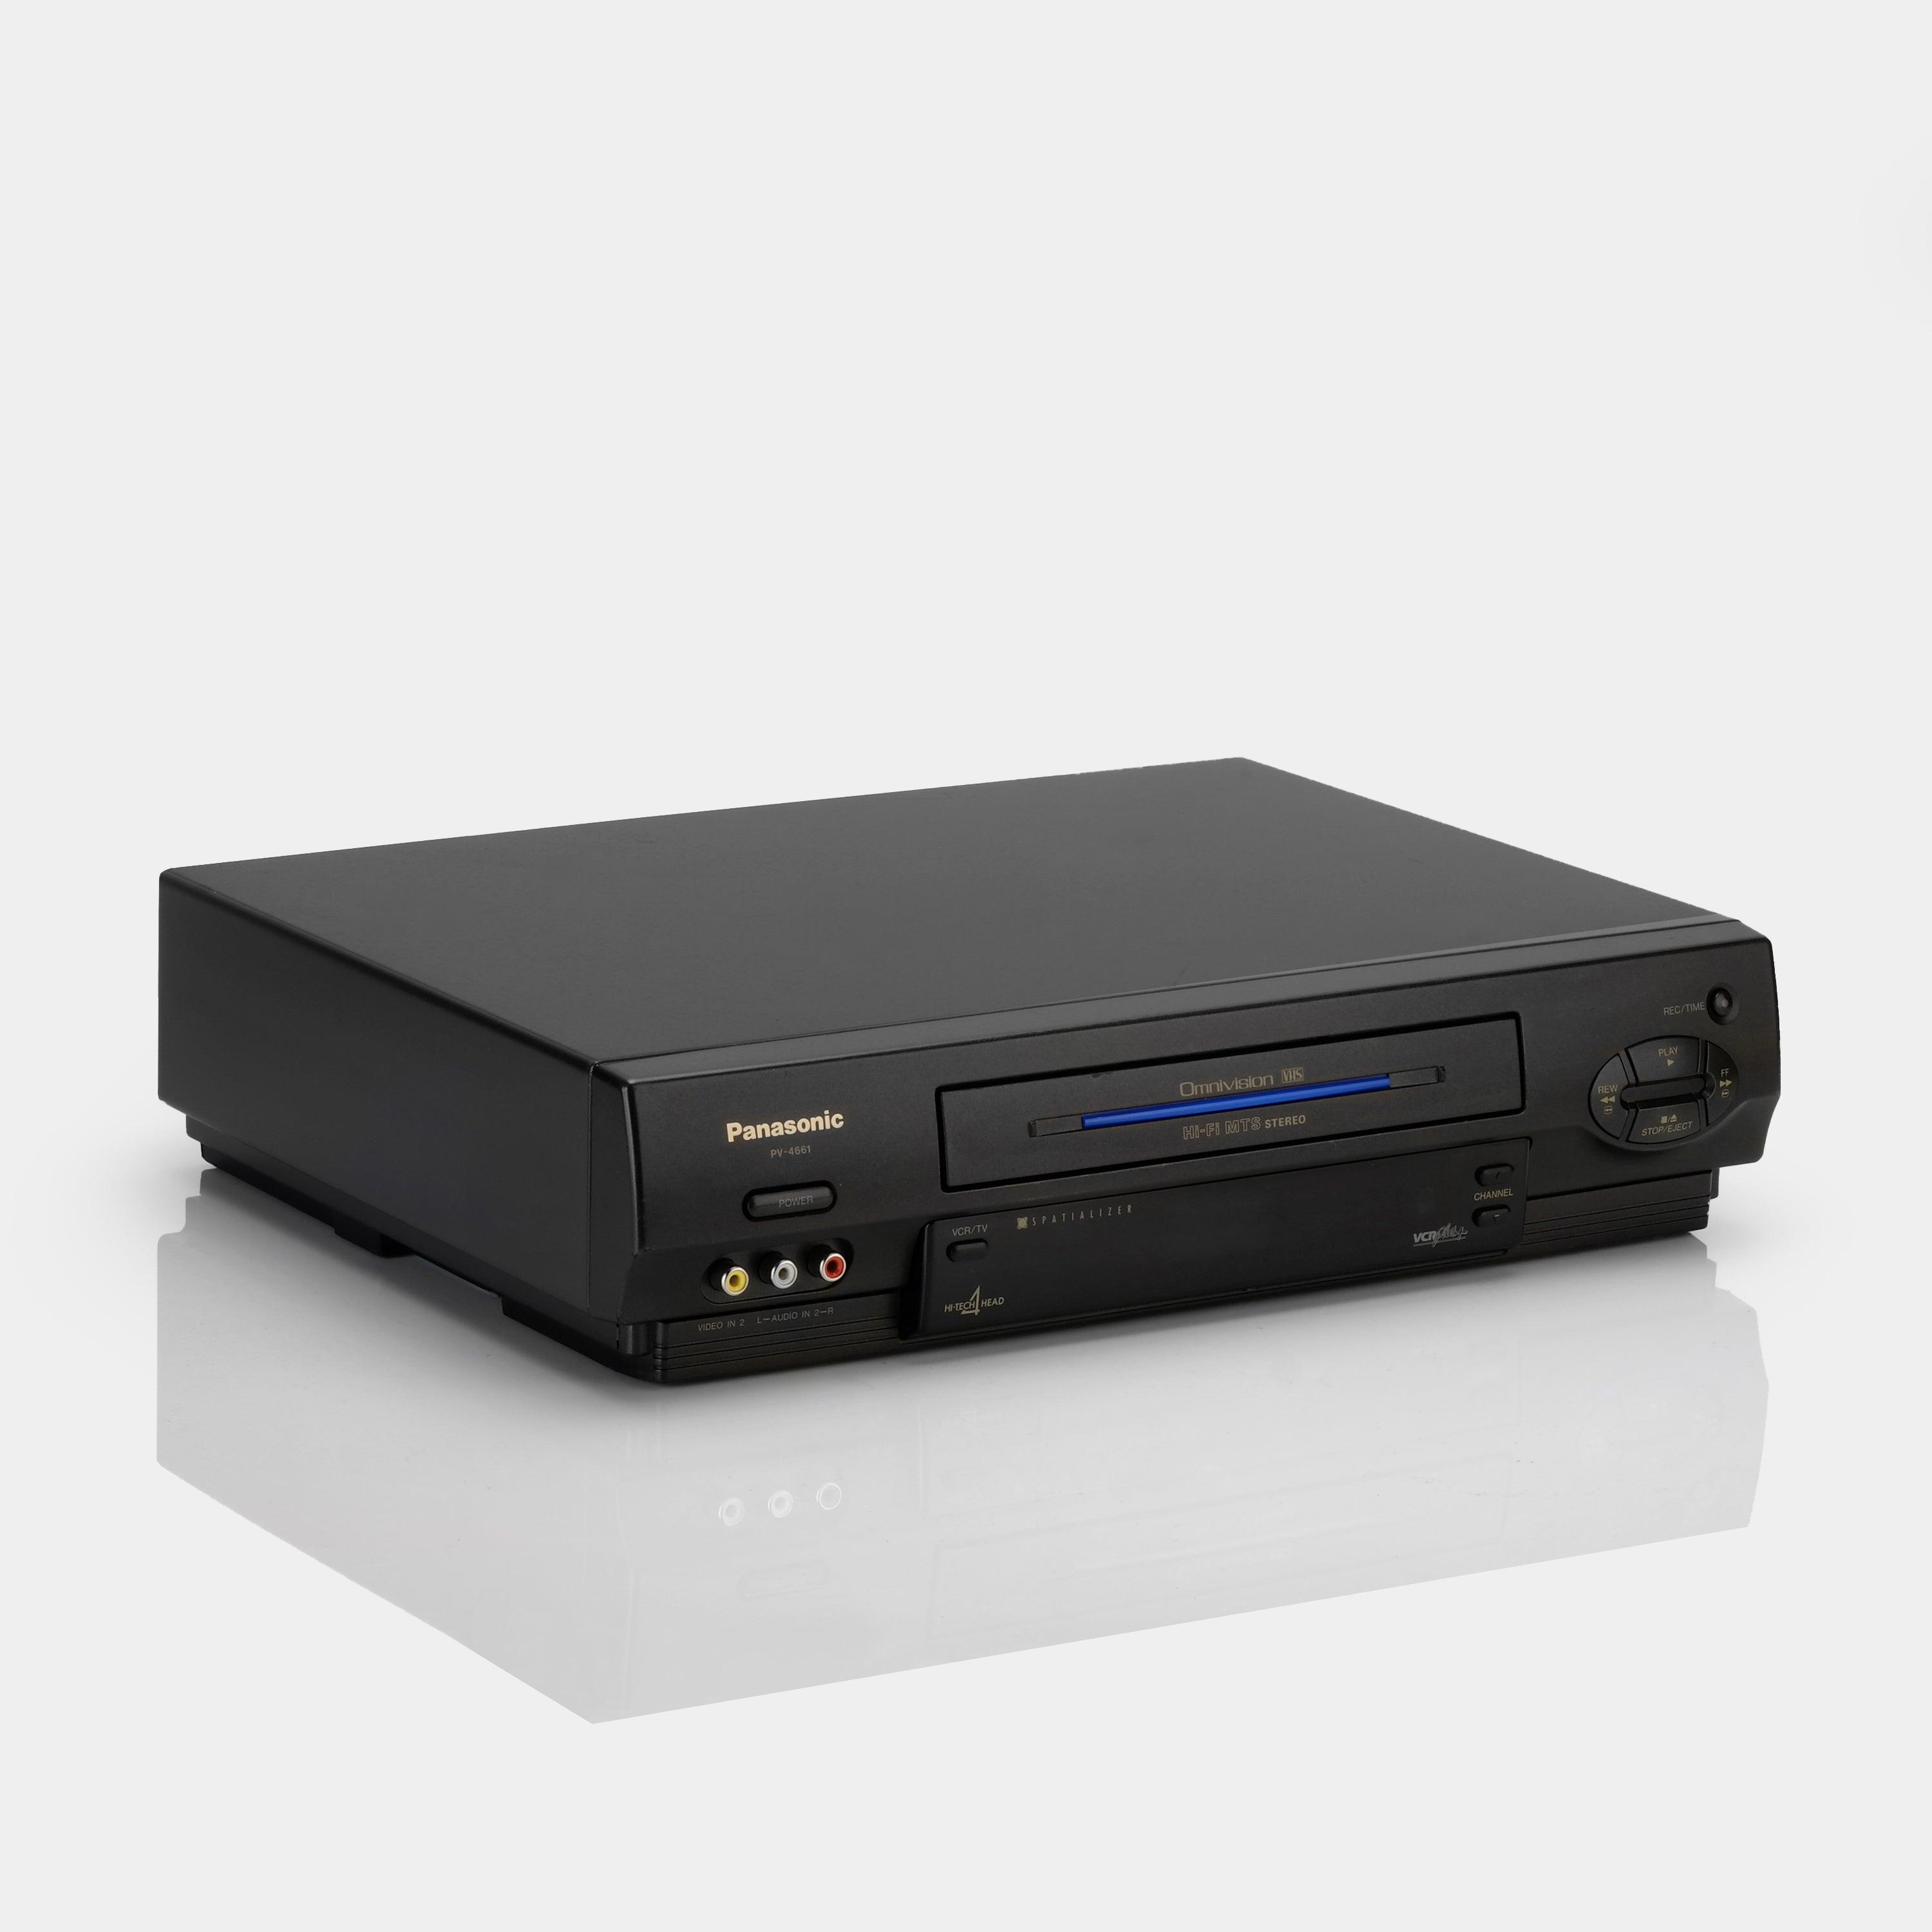 Panasonic PV-4661 VCR VHS Player